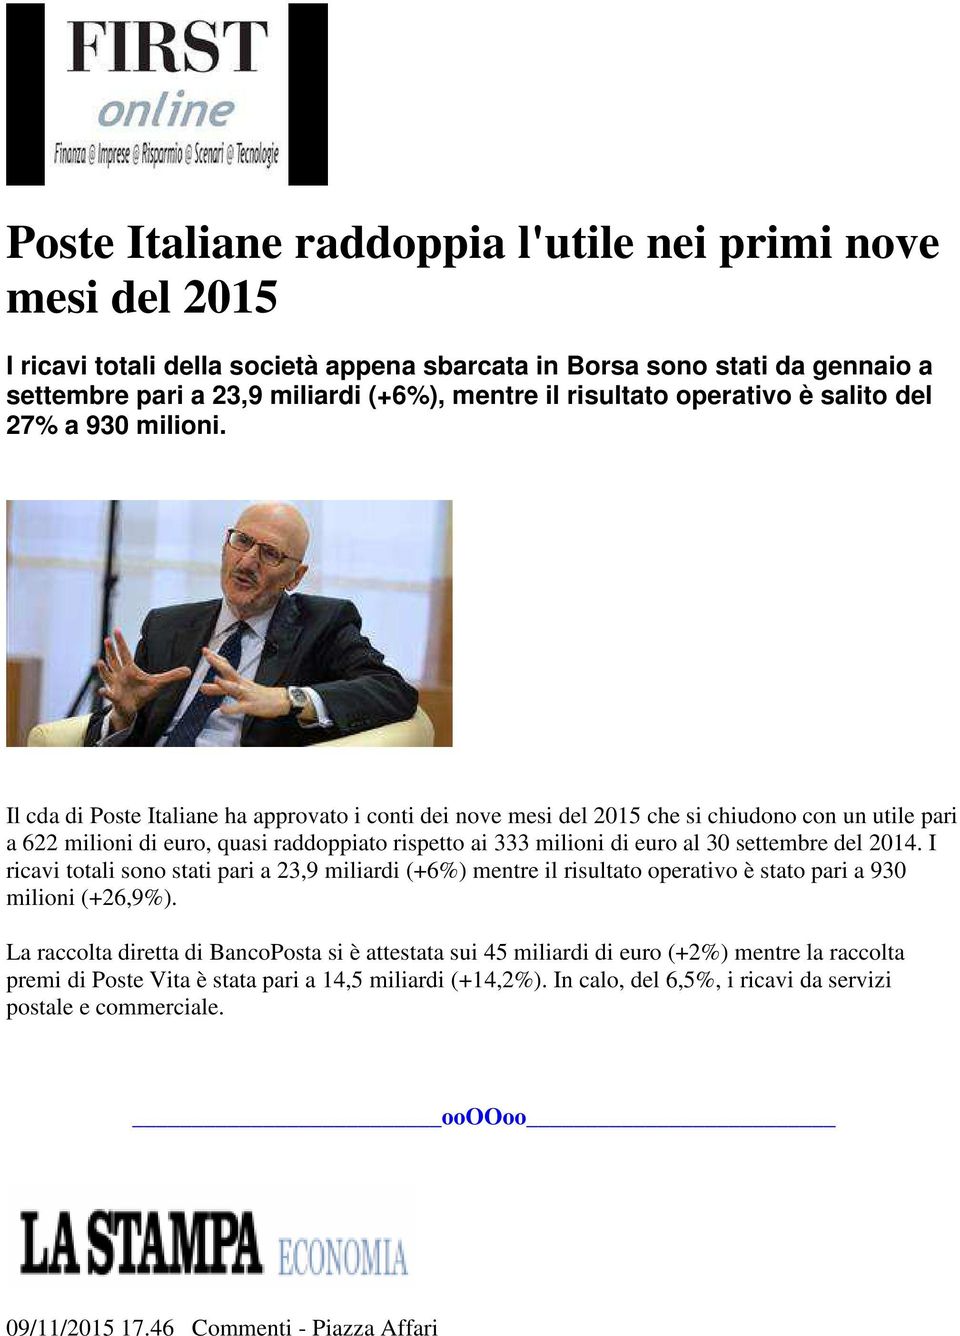 Il cda di Poste Italiane ha approvato i conti dei nove mesi del 2015 che si chiudono con un utile pari a 622 milioni di euro, quasi raddoppiato rispetto ai 333 milioni di euro al 30 settembre del